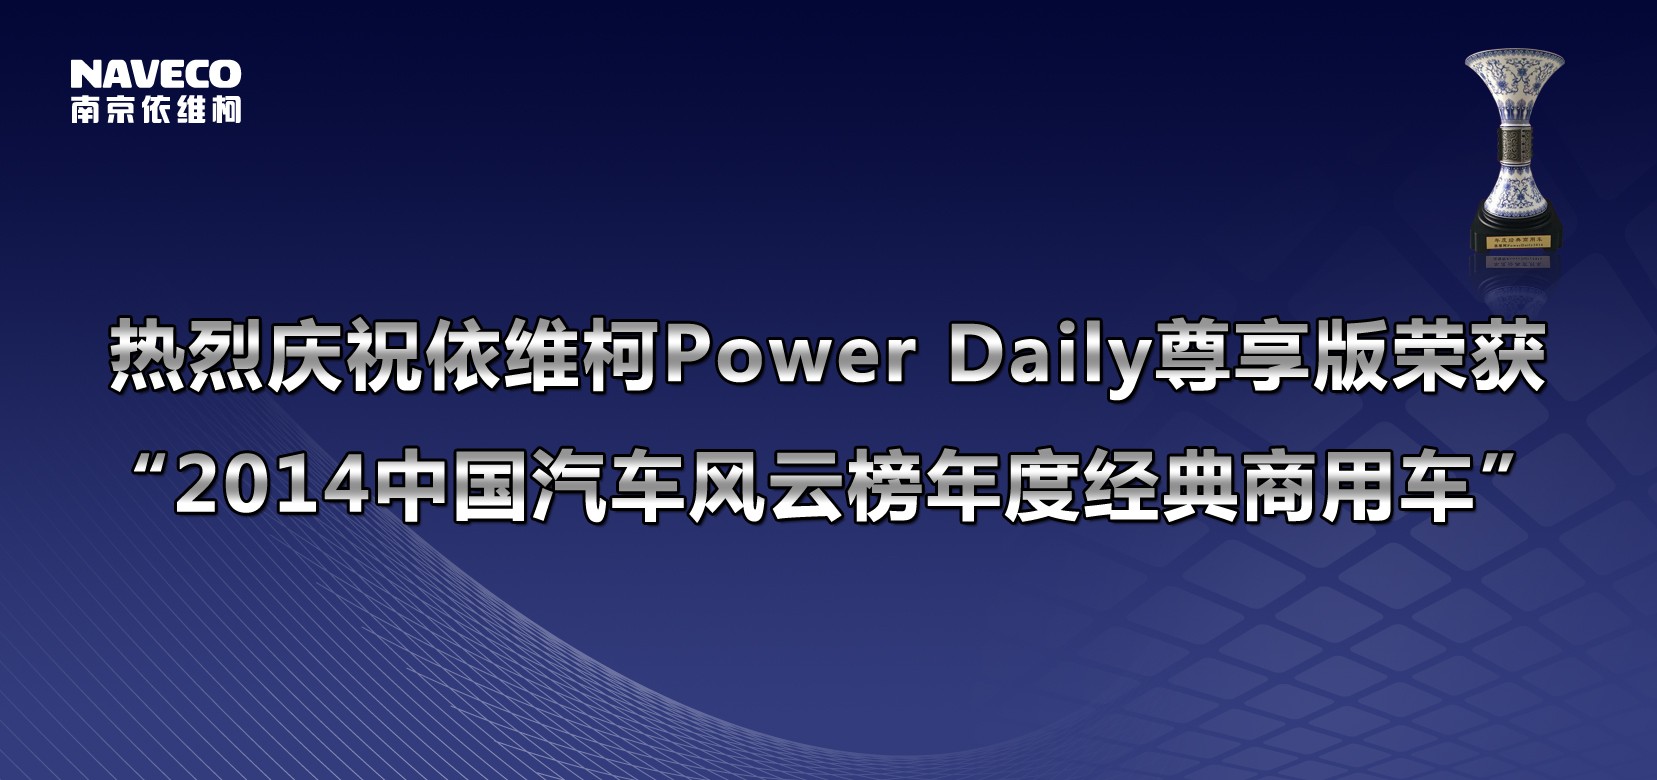 依维柯Power Daily尊享版荣获“2014年度经典商用车